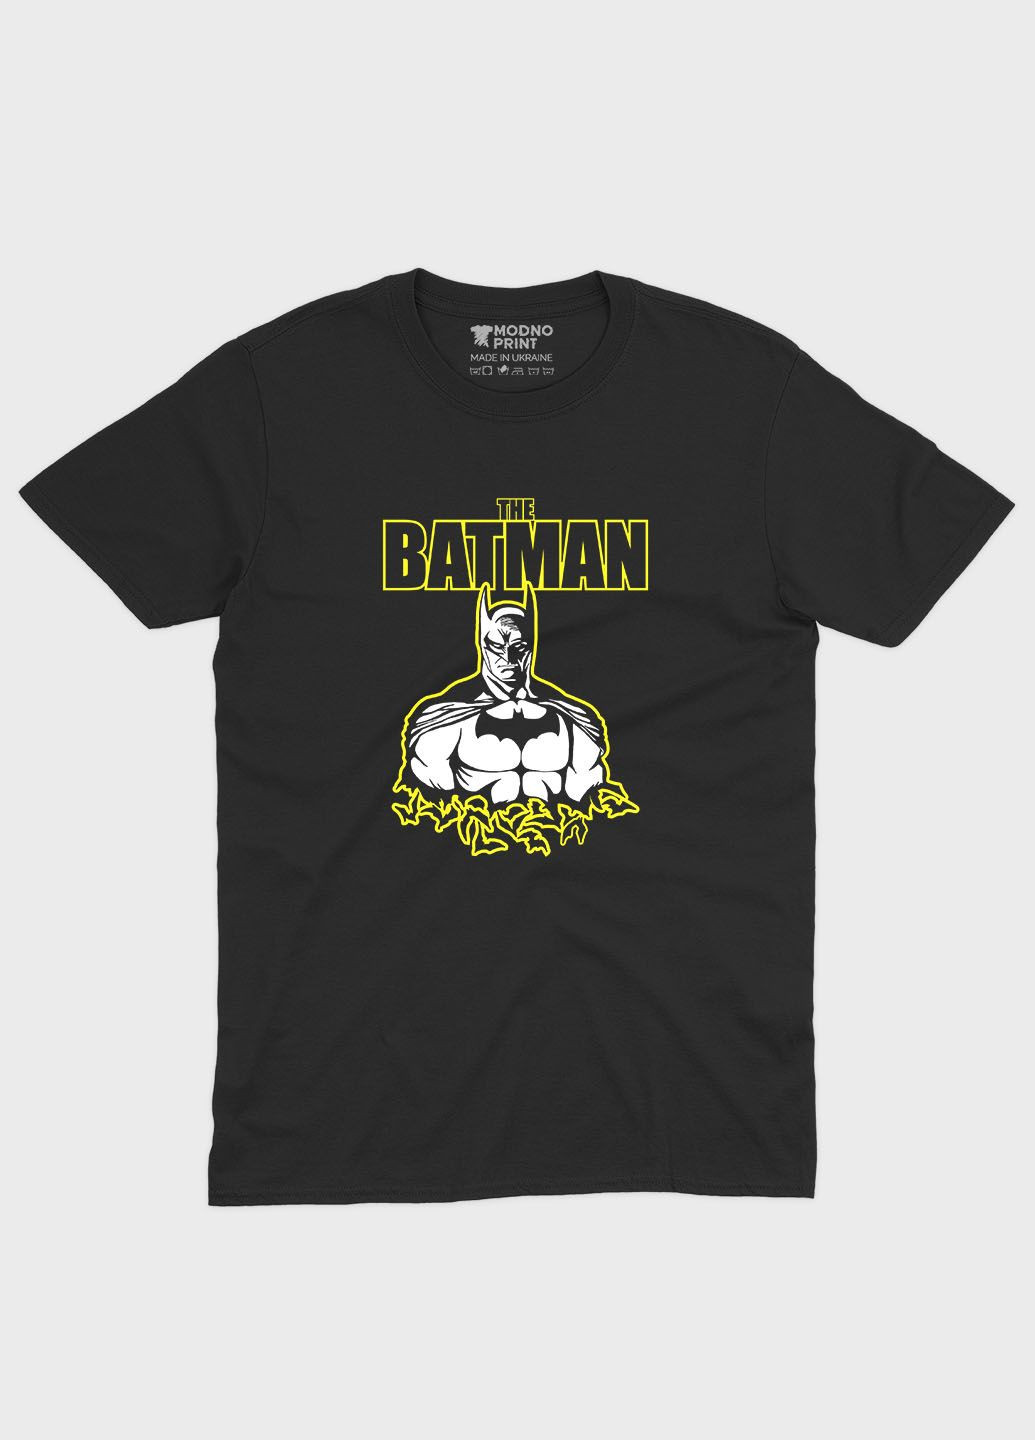 Черная демисезонная футболка для мальчика с принтом супергероя - бэтмен (ts001-1-bl-006-003-015-b) Modno